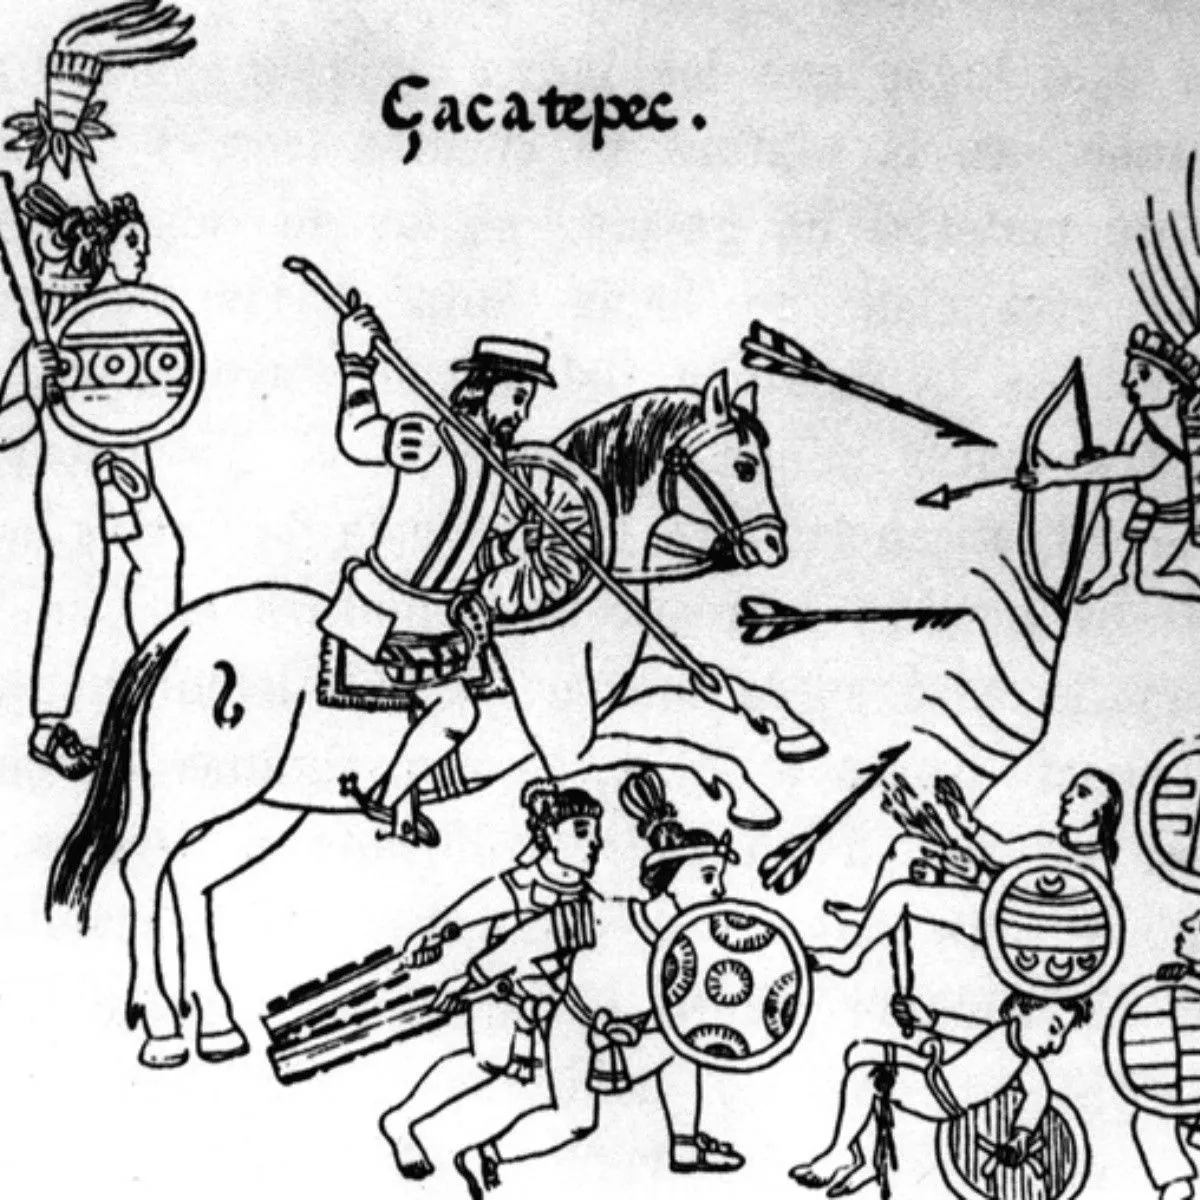 La visión indígena de la conquista española | El Informador